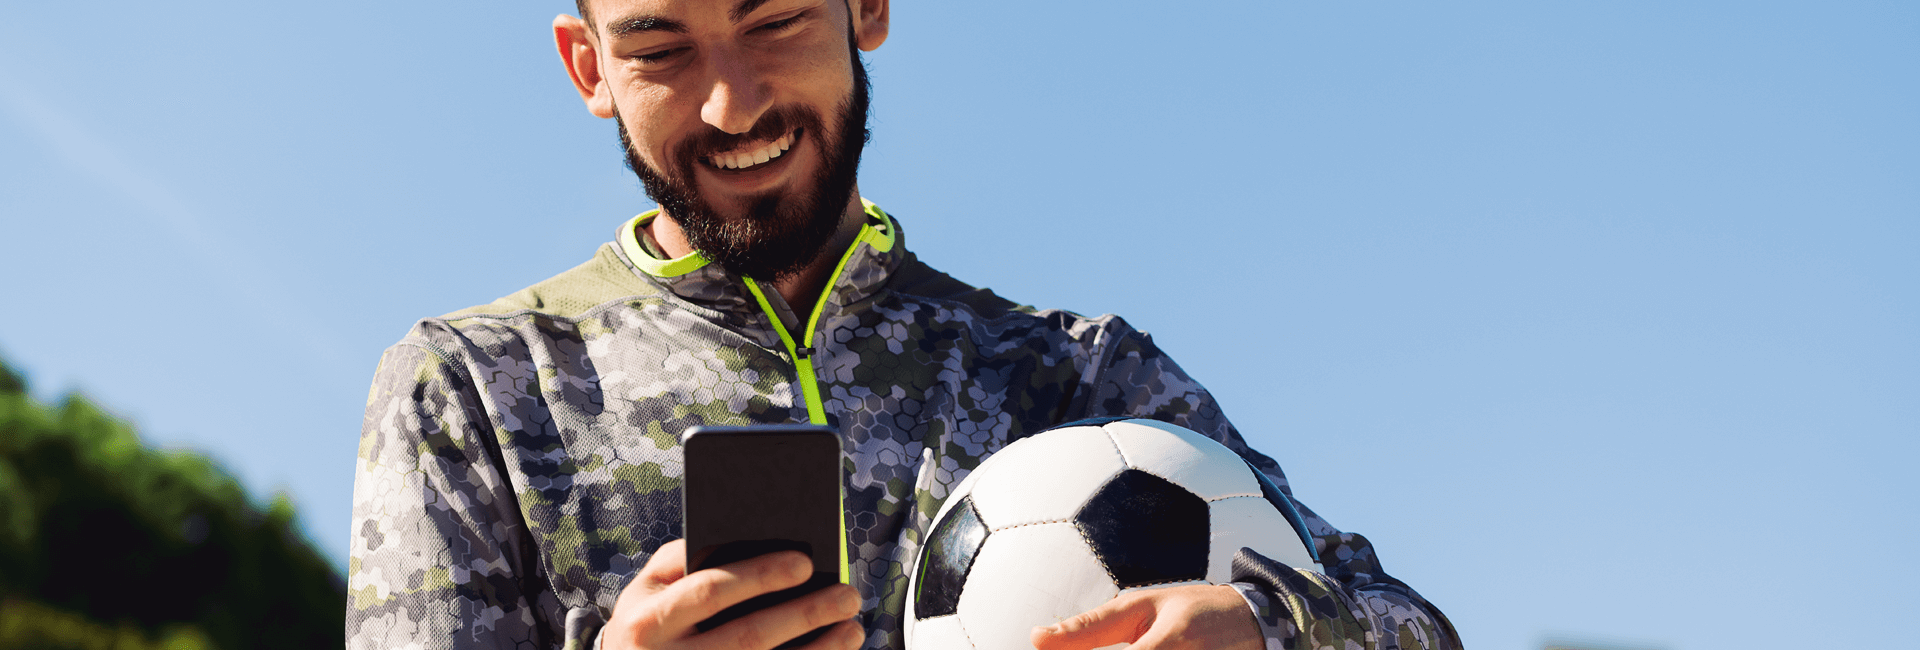 man met bal en telefoon in handen - voetbal city game delft - gasterij 't karrewiel